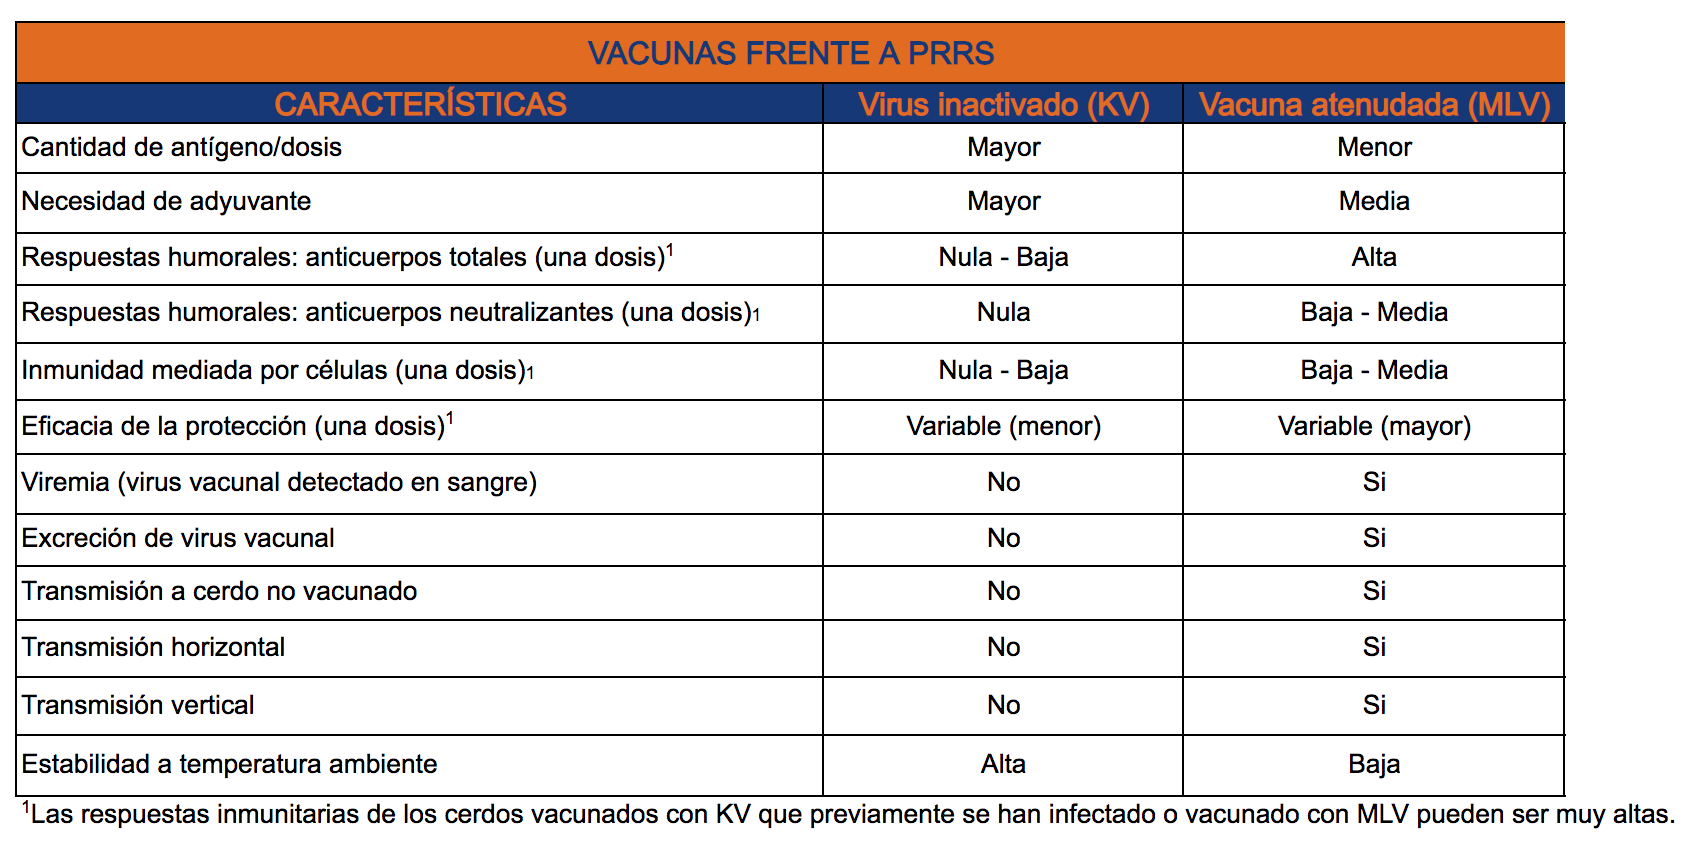 Vacunas frente a PRRS